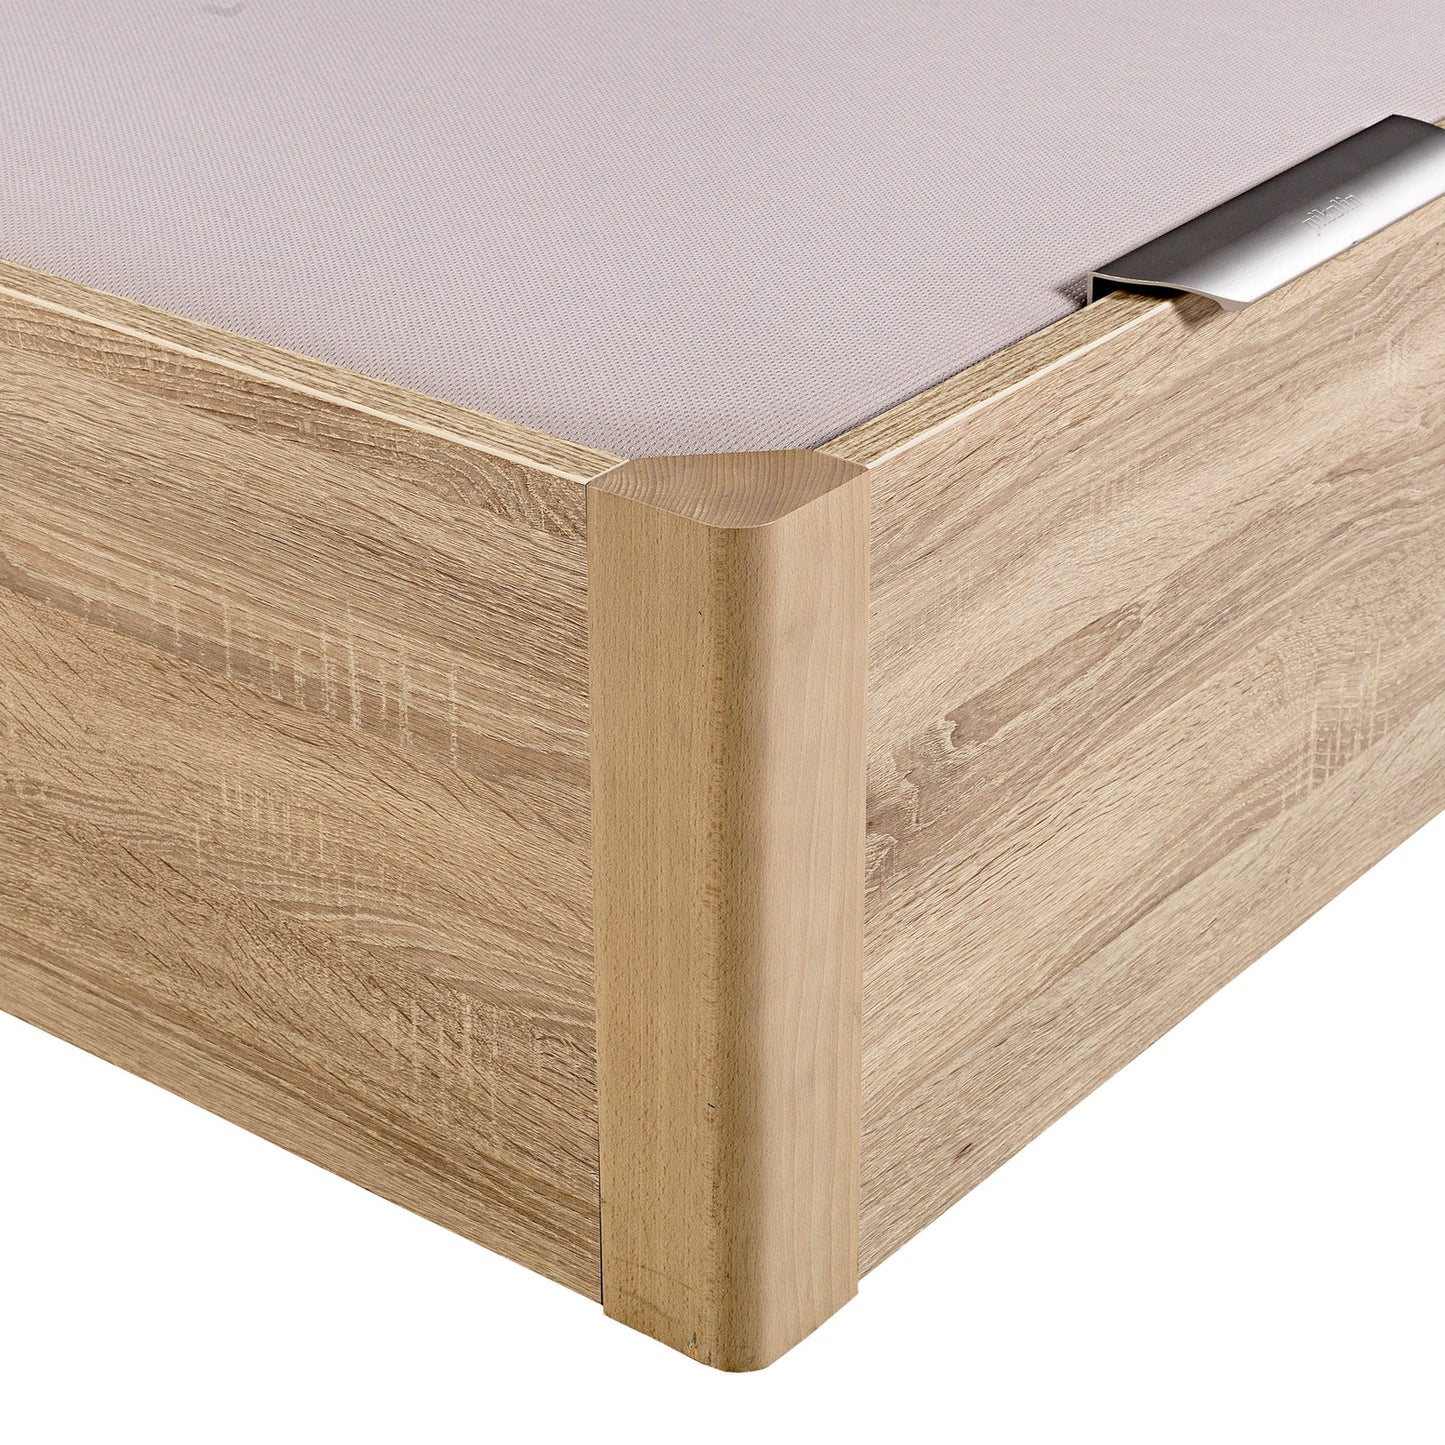 Canapé abatible de madera de alta capacidad tapa doble de color natural - DESIGN - 150x182